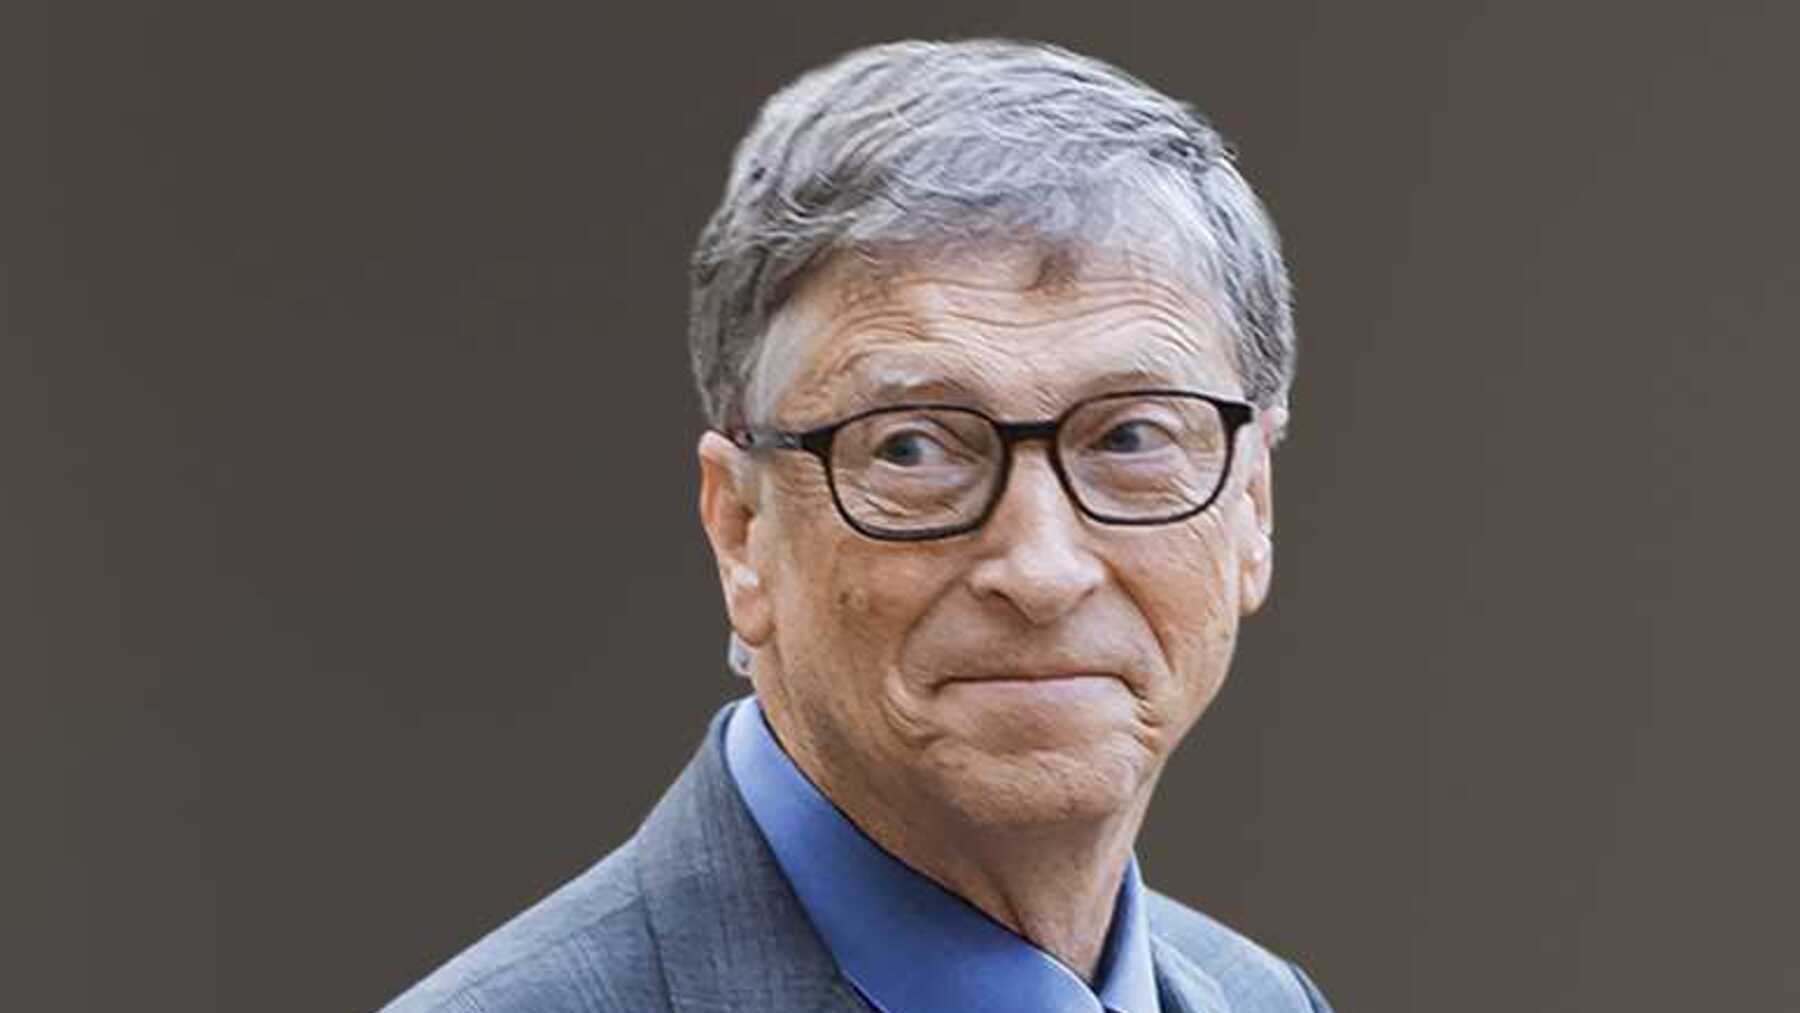 La dura predicción de Bill Gates sobre el futuro que no pinta nada bien